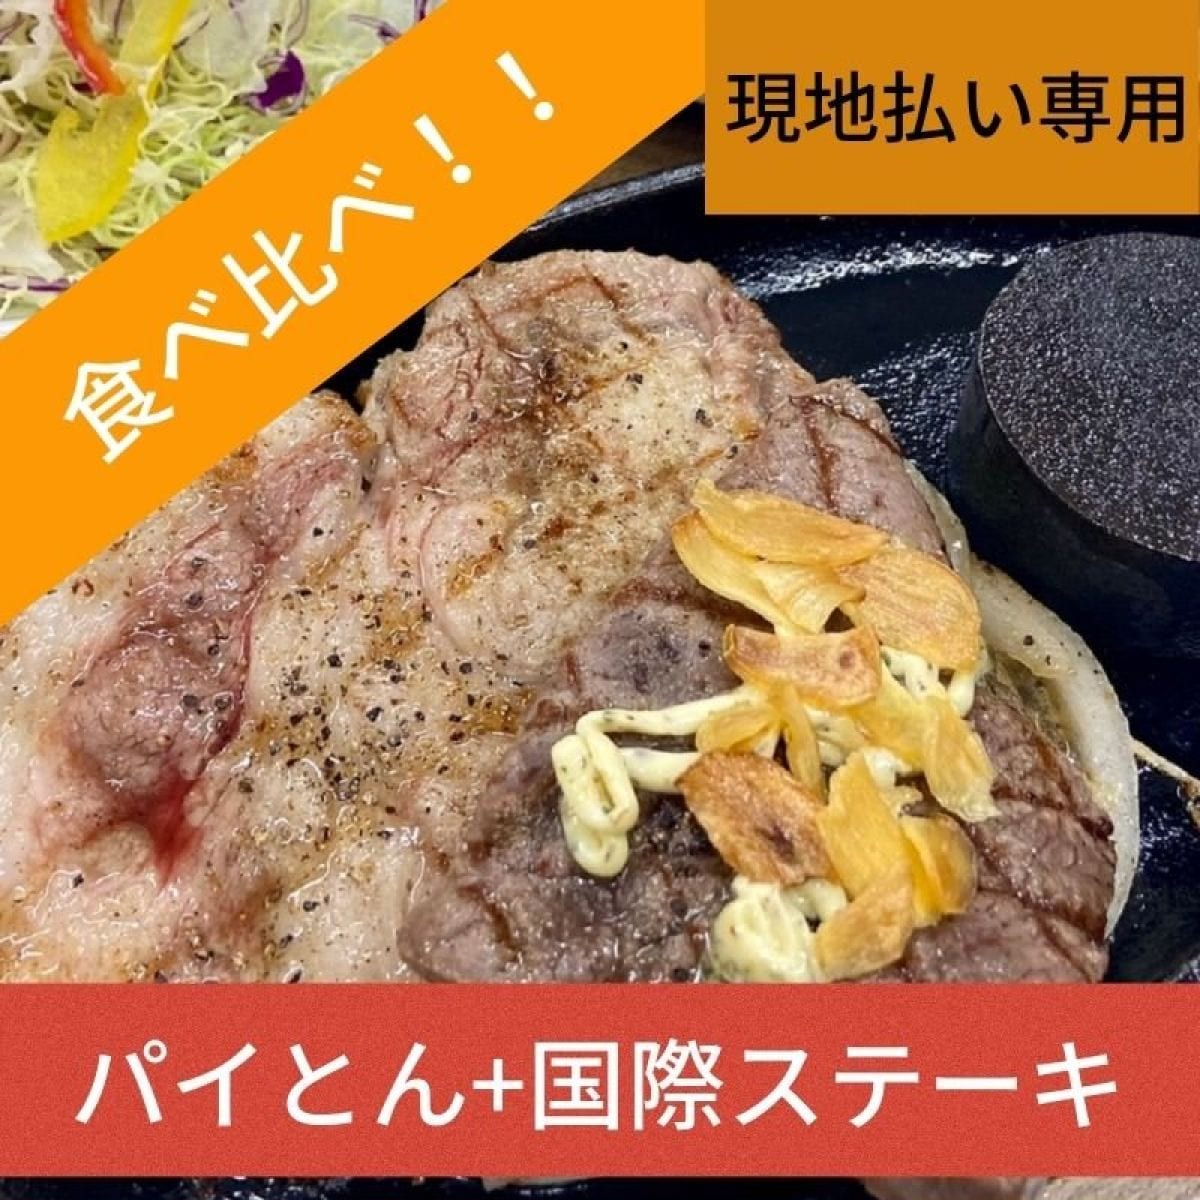 【現地払い専用】パイとんステーキ+国際ステーキ